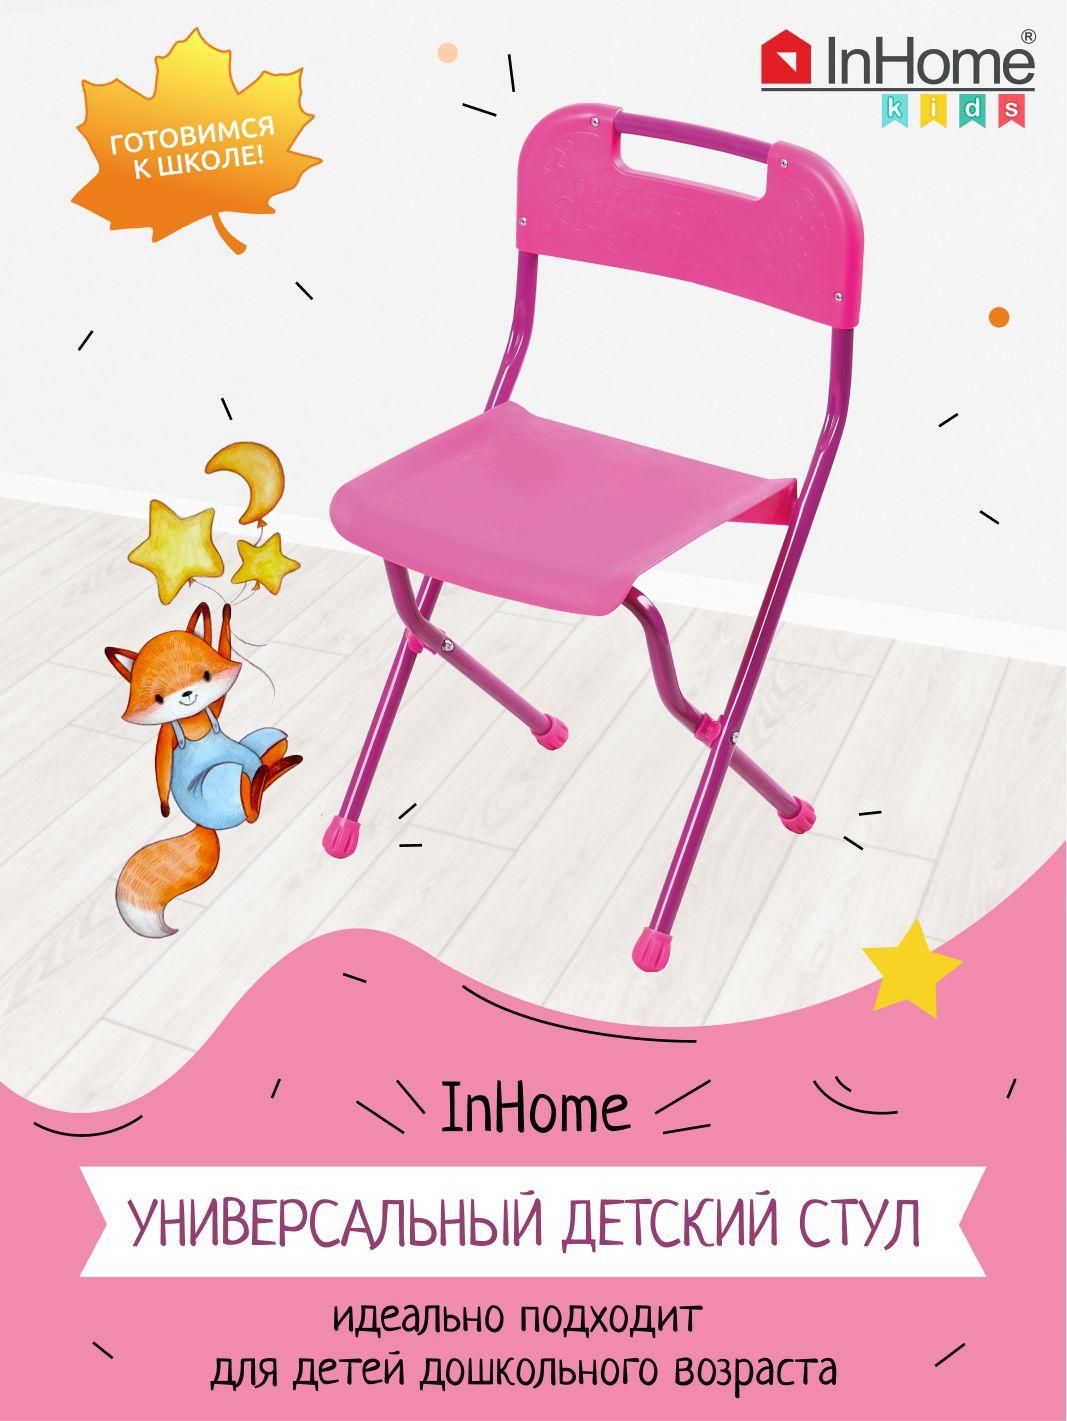 InHome | Складной пластиковый стульчик для детей от 3 до 7 лет, 560x270x290 мм, InHome СТИ1. Цвет: розовый